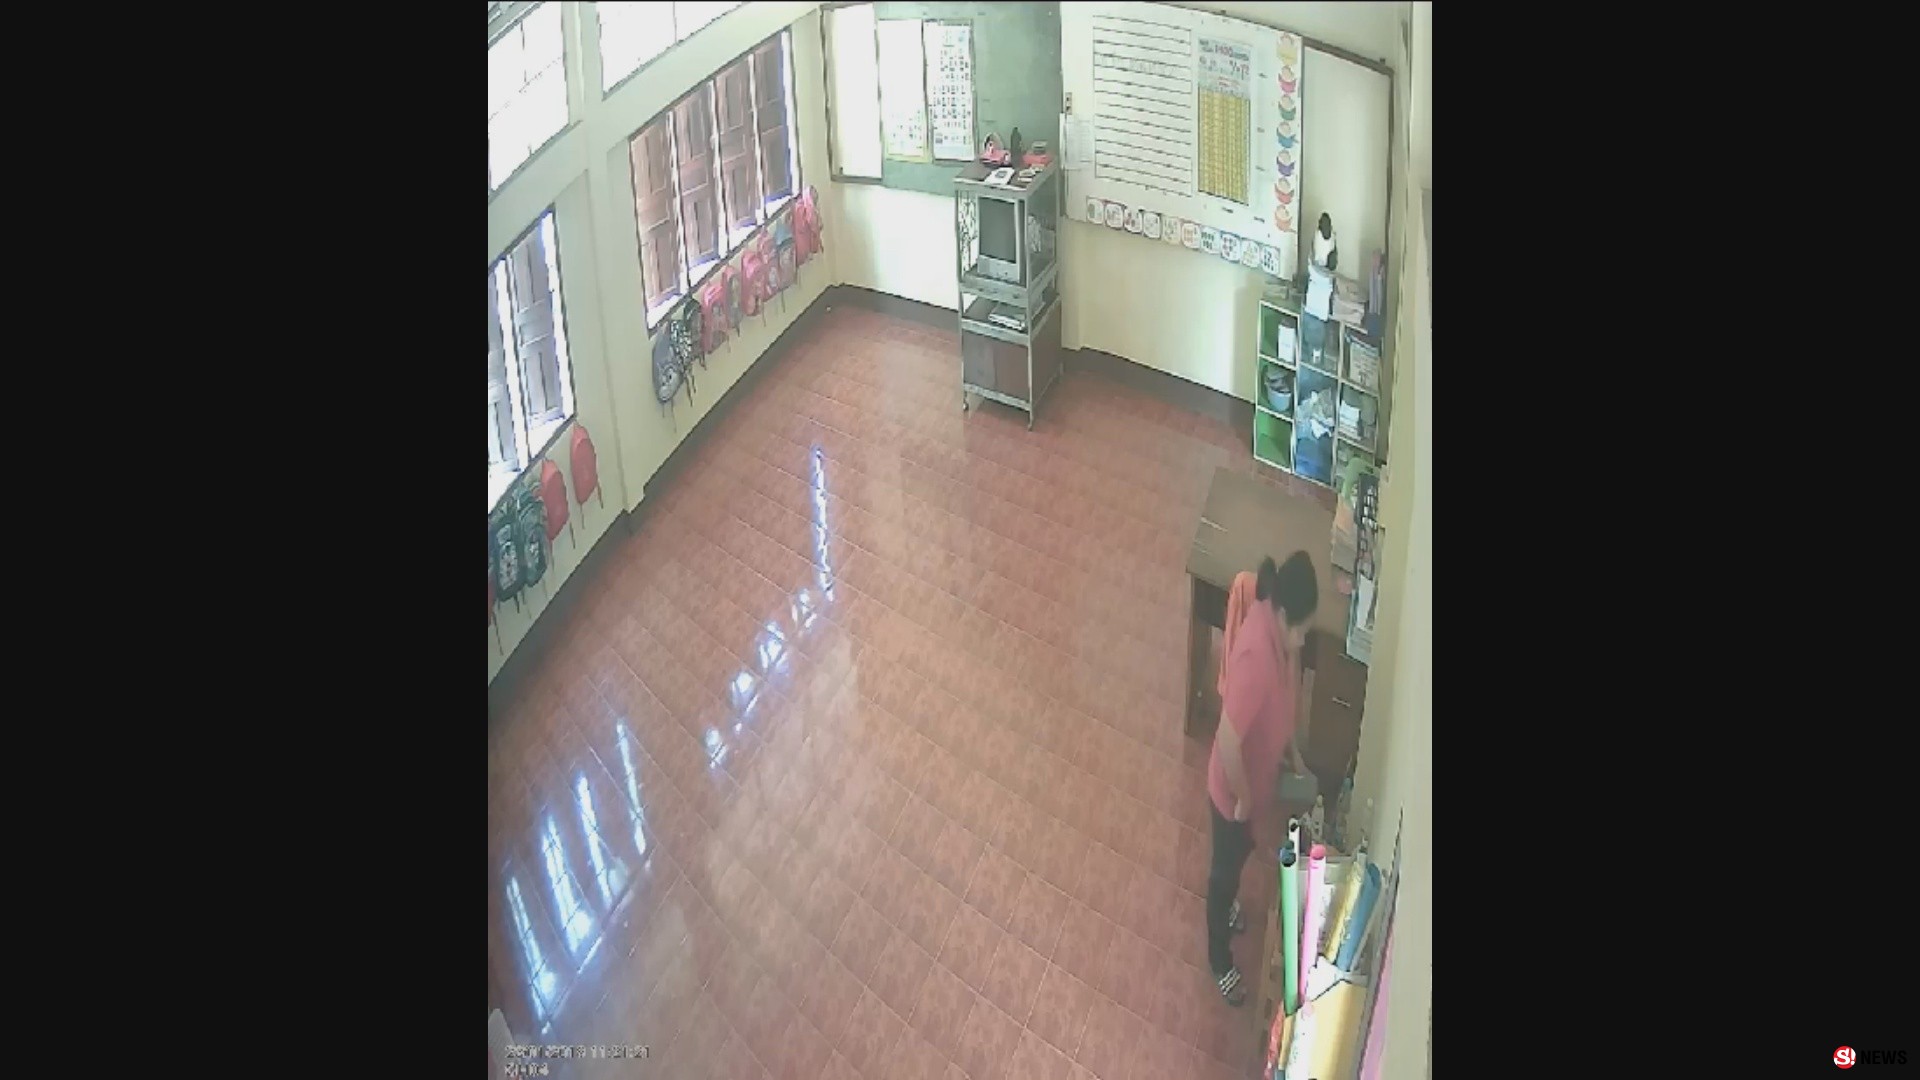 พิษเศรษฐกิจ-กล้องจับภาพสาวให้บริการตัดแว่นในโรงเรียน ย่องฉกเงินครูหนีลอยนวล